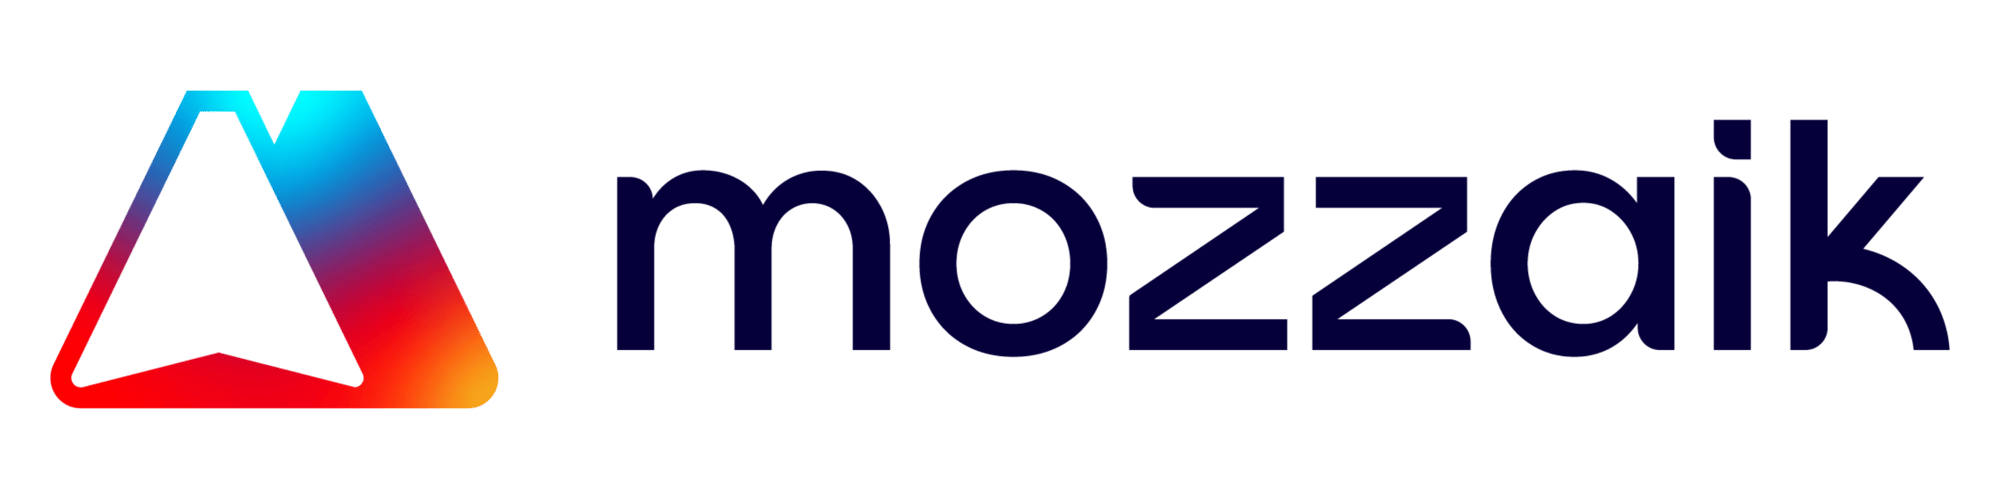 Logo Mozzaik long